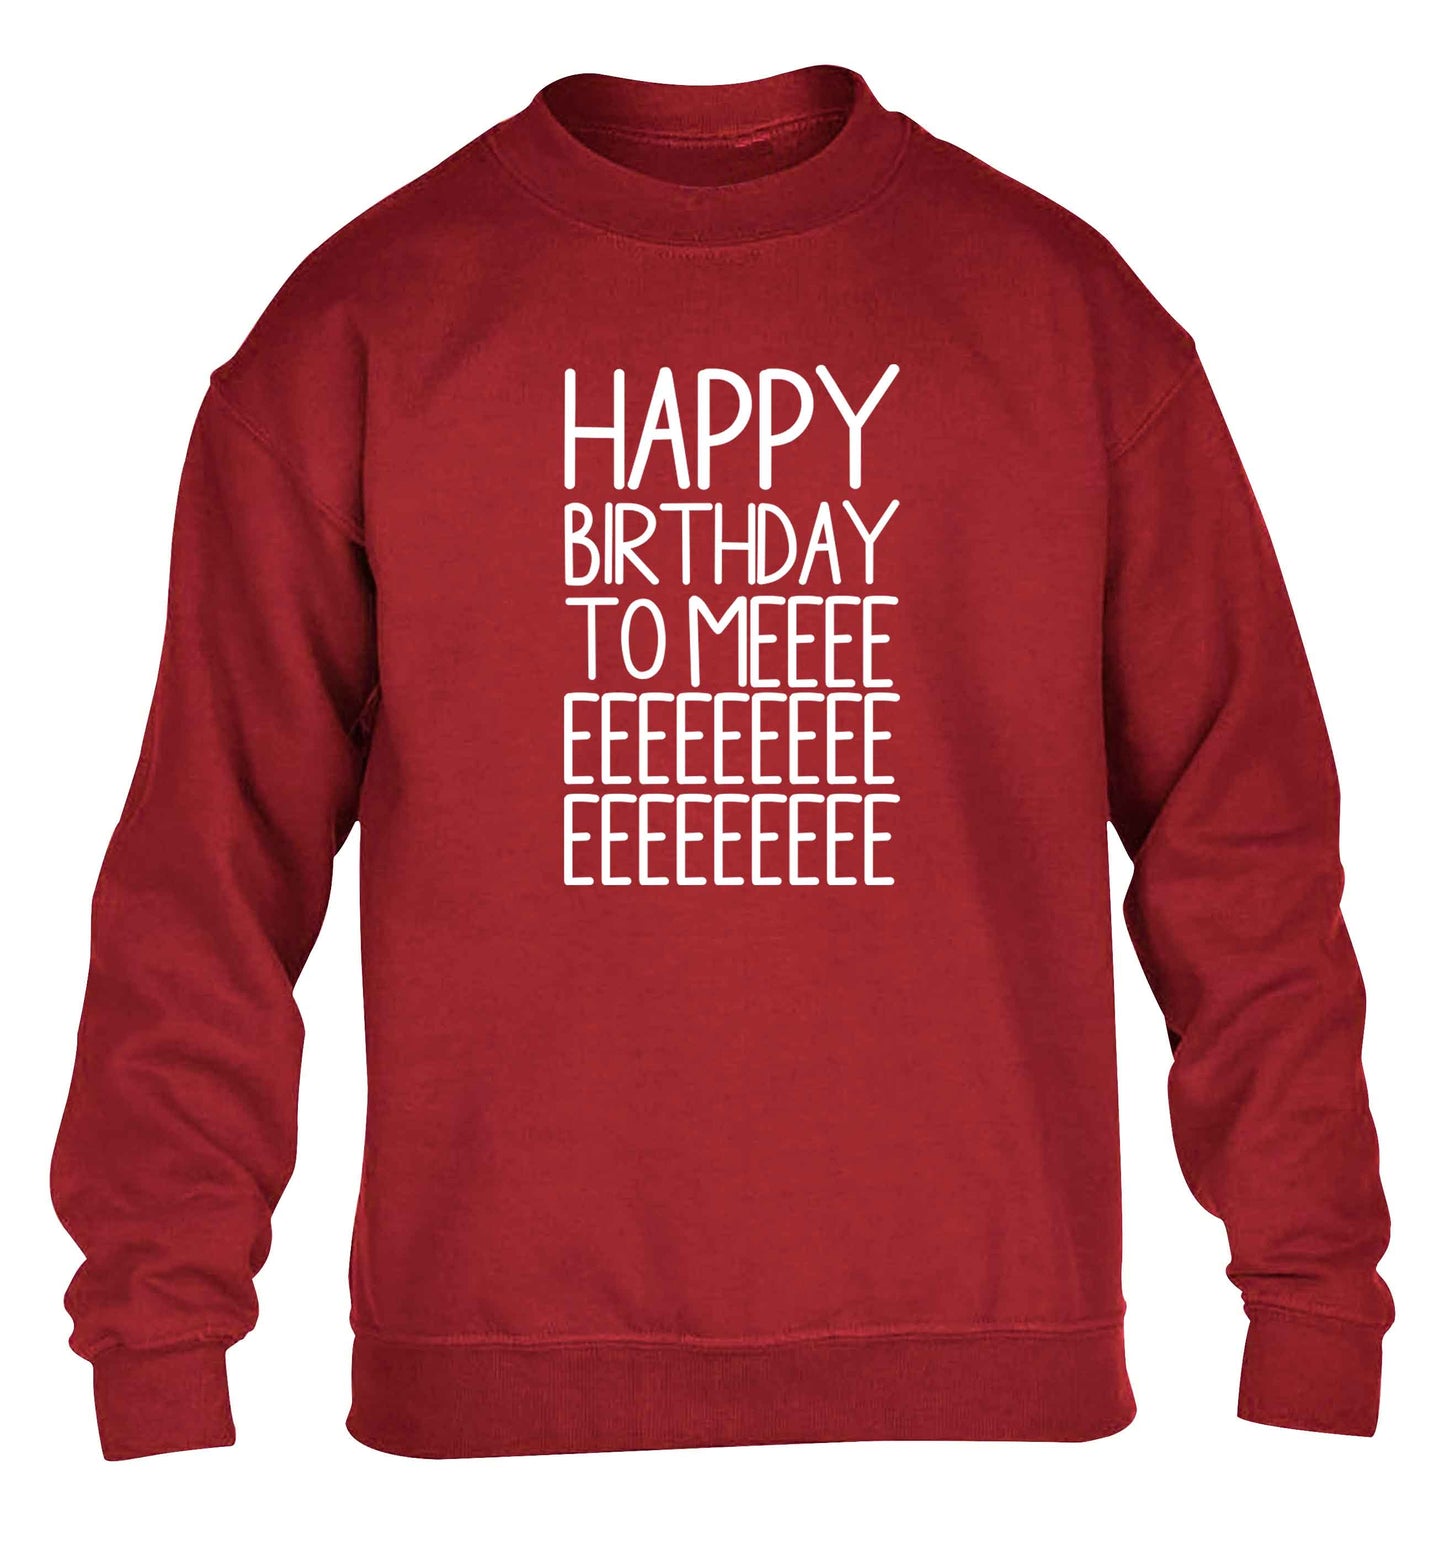 Happy birthday to me children's grey sweater 12-13 Years